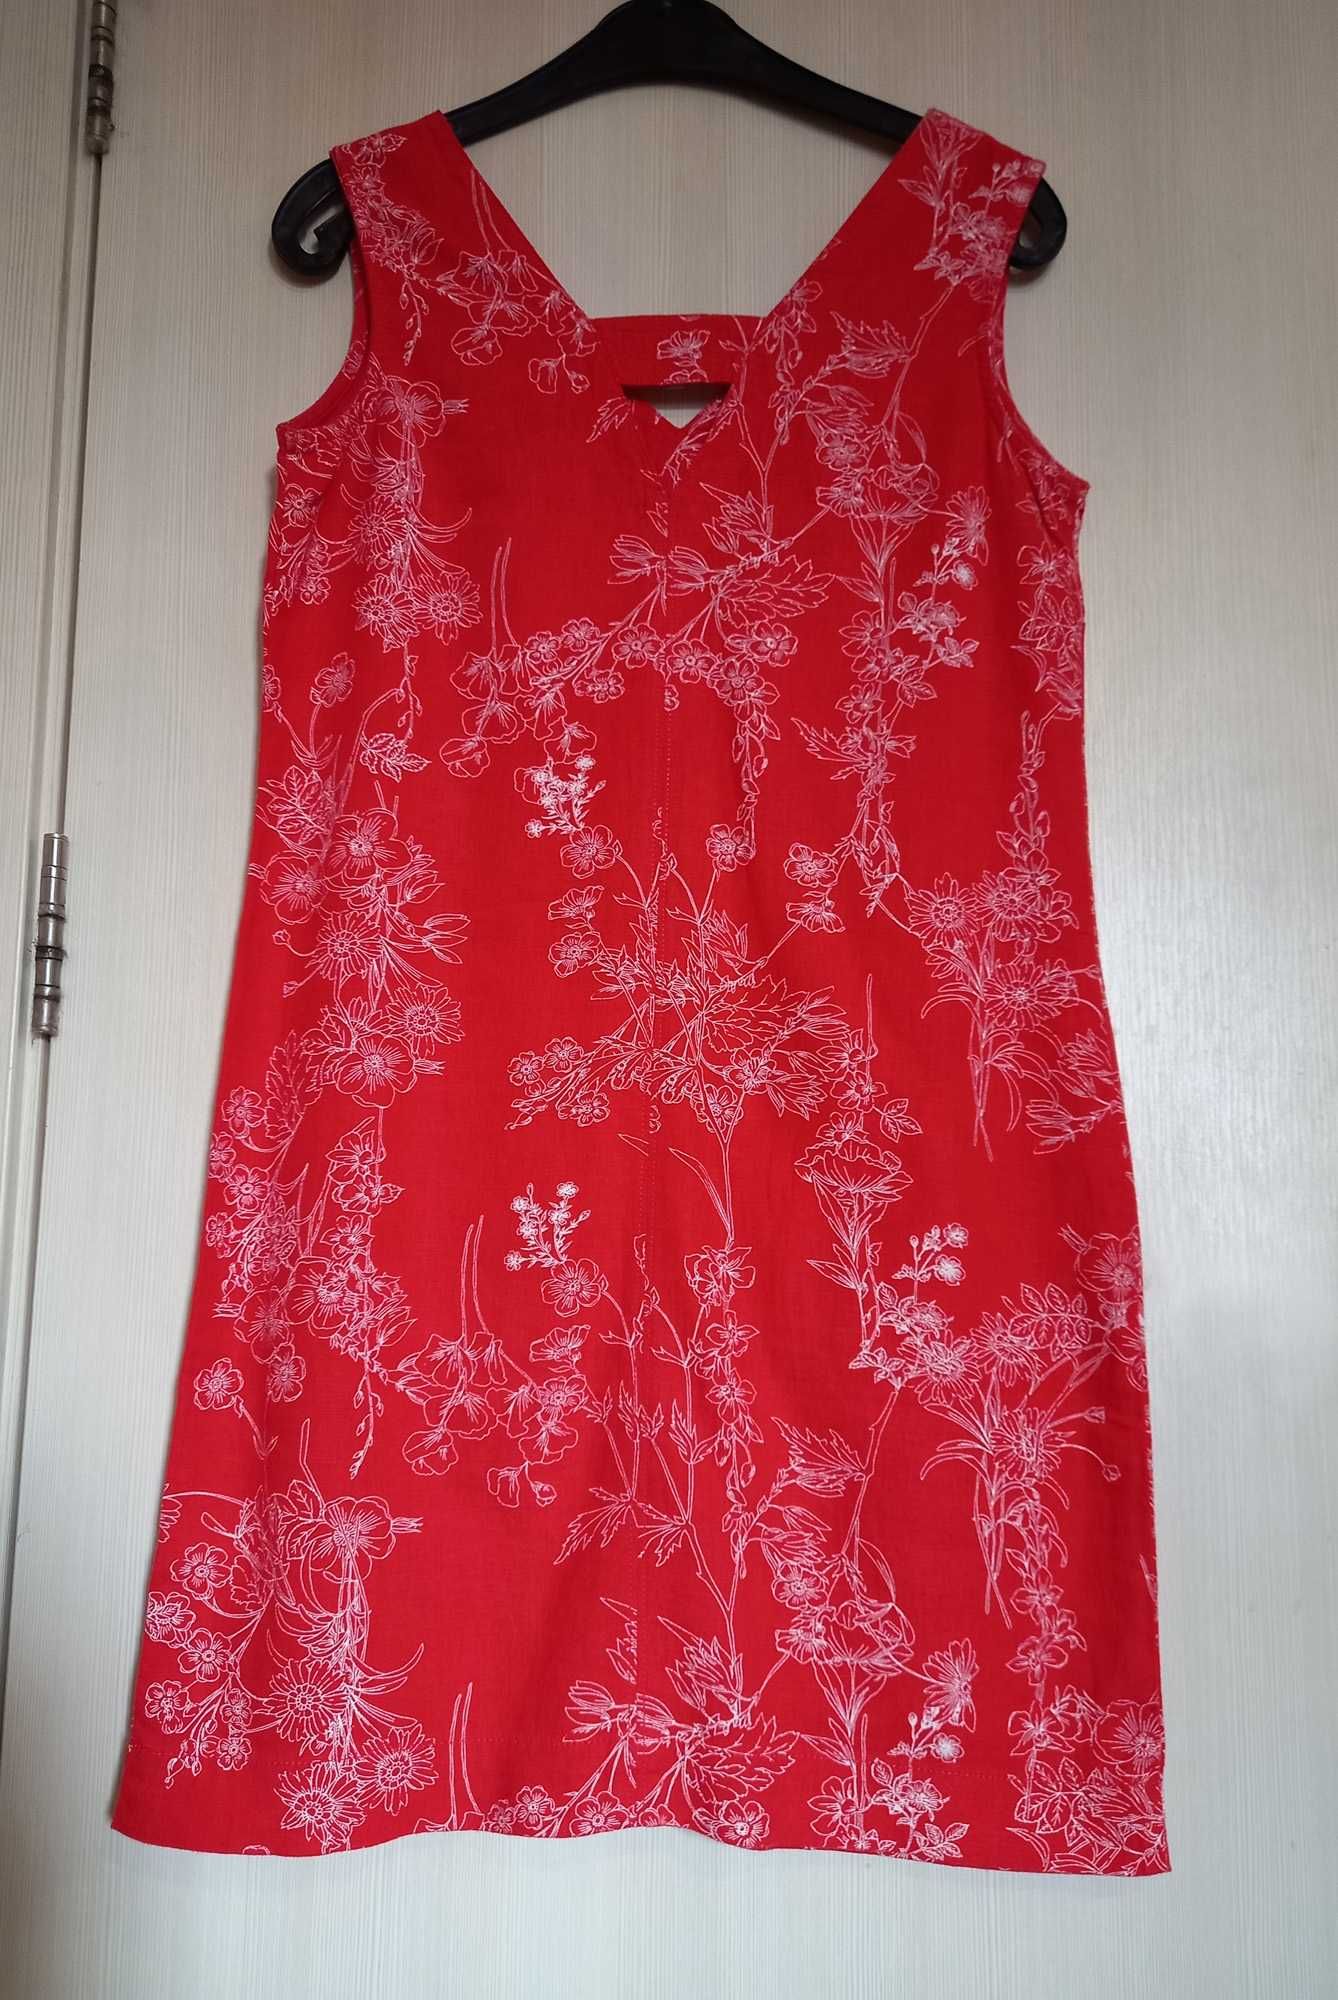 Къса, разкроена рокля с лен NEXT. Червена с флорален десен